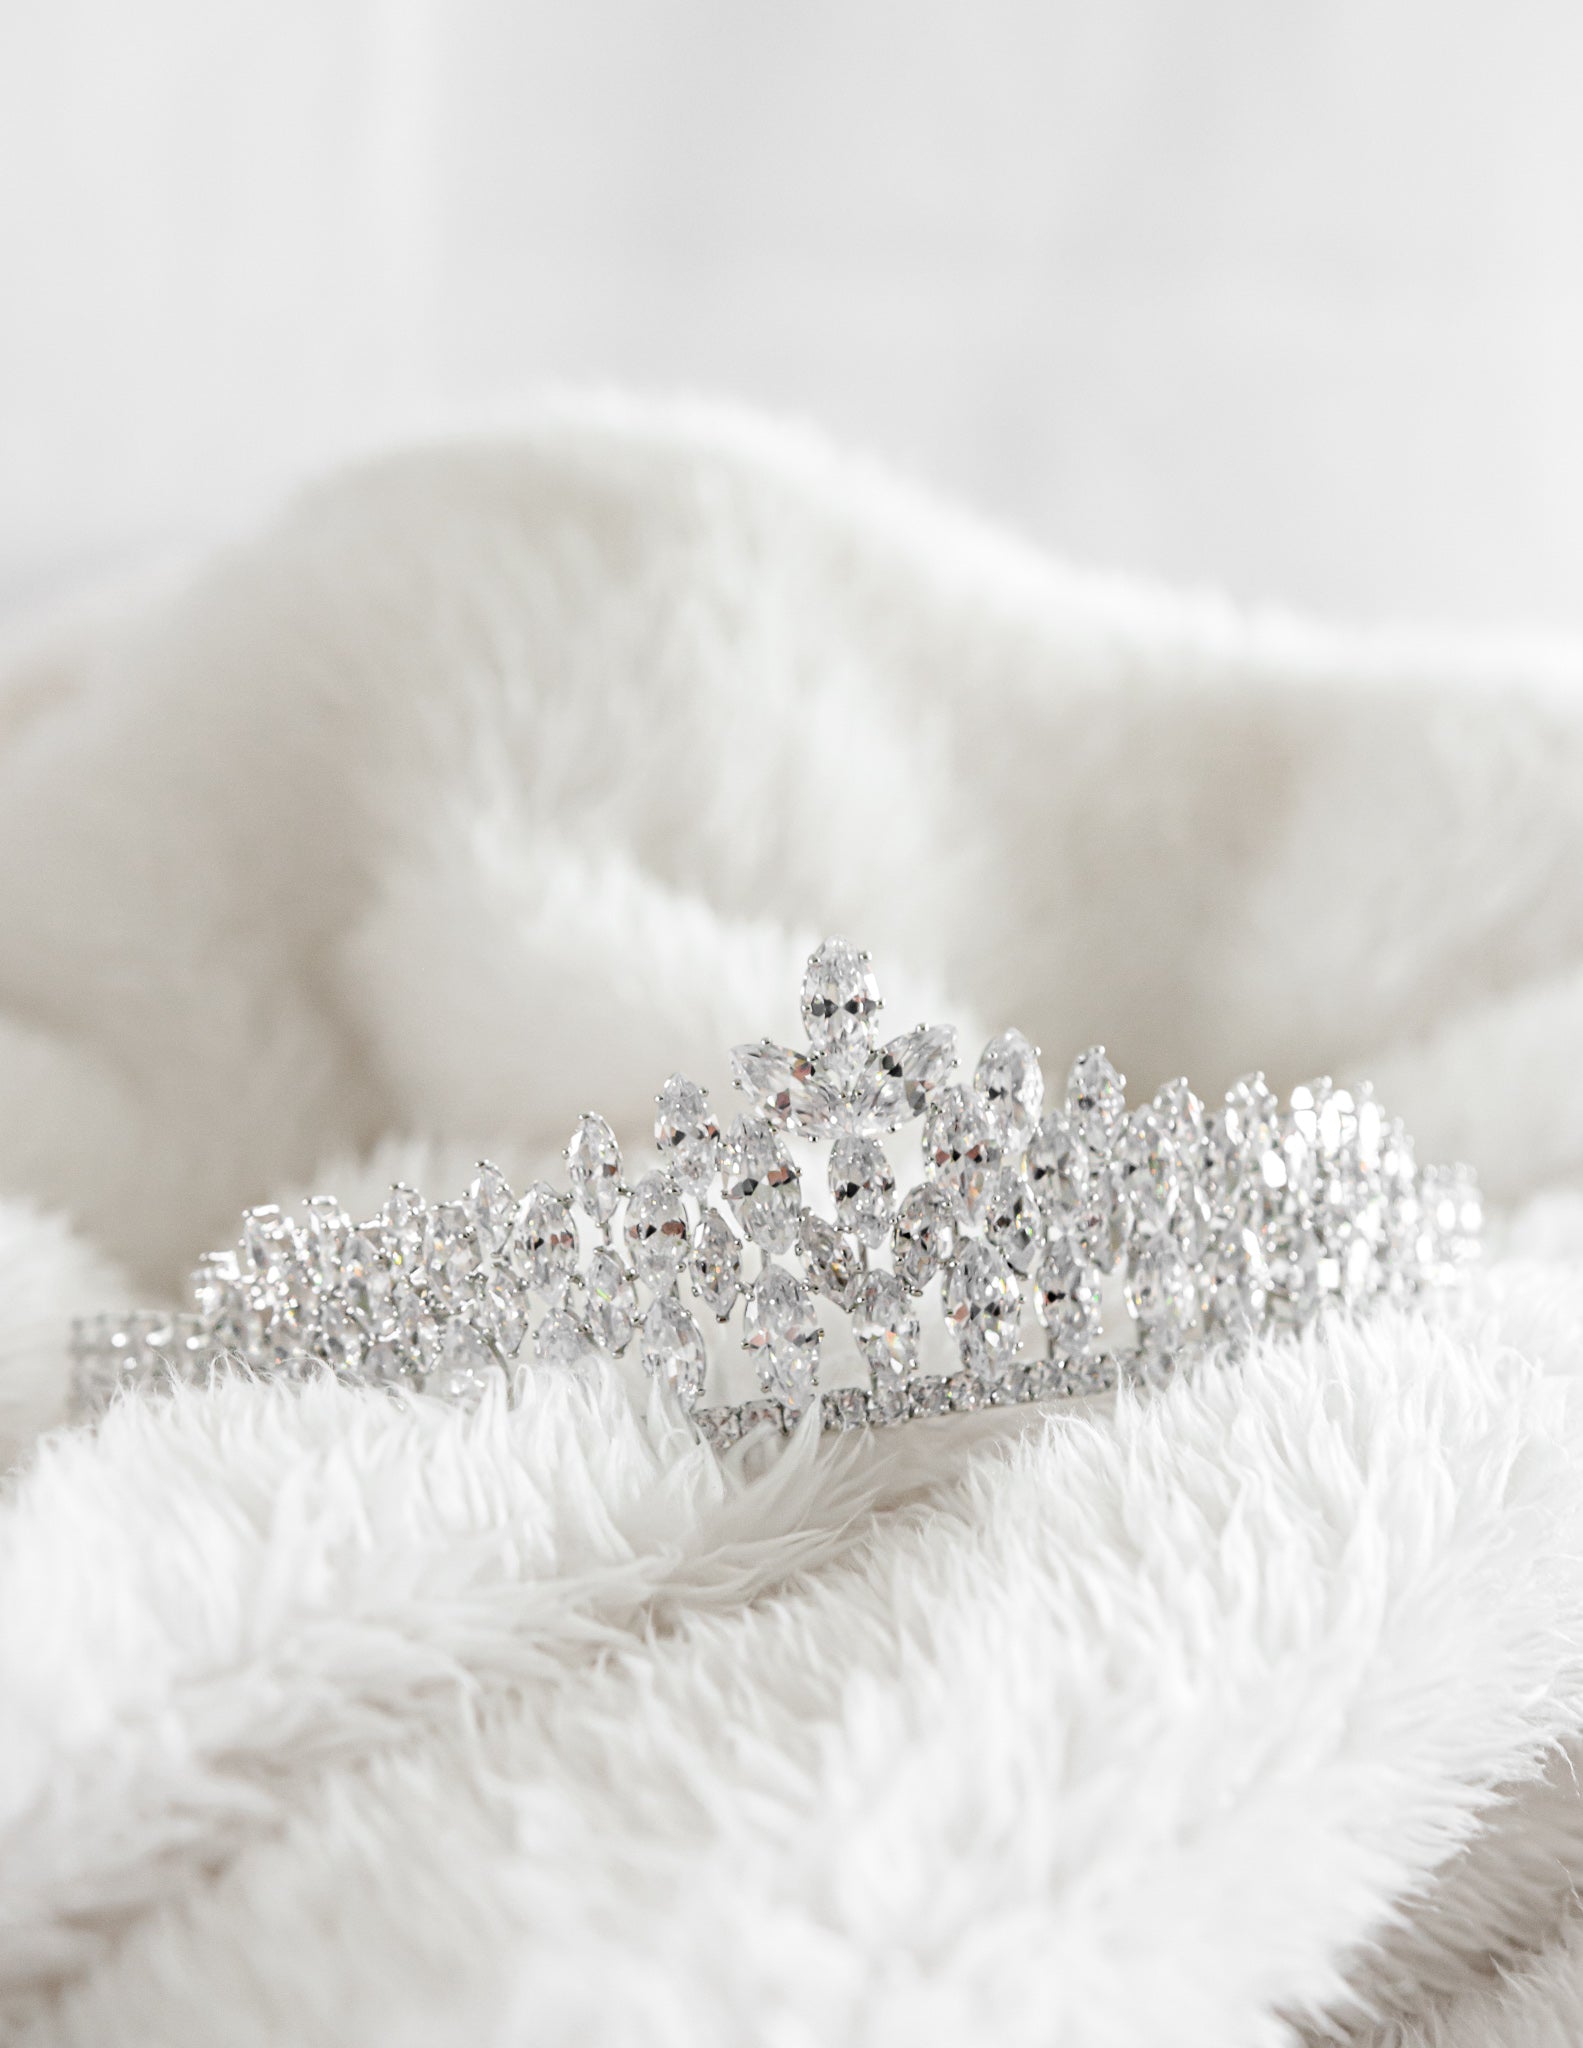 A sparkling diamond tiara resting on a white soft blanket